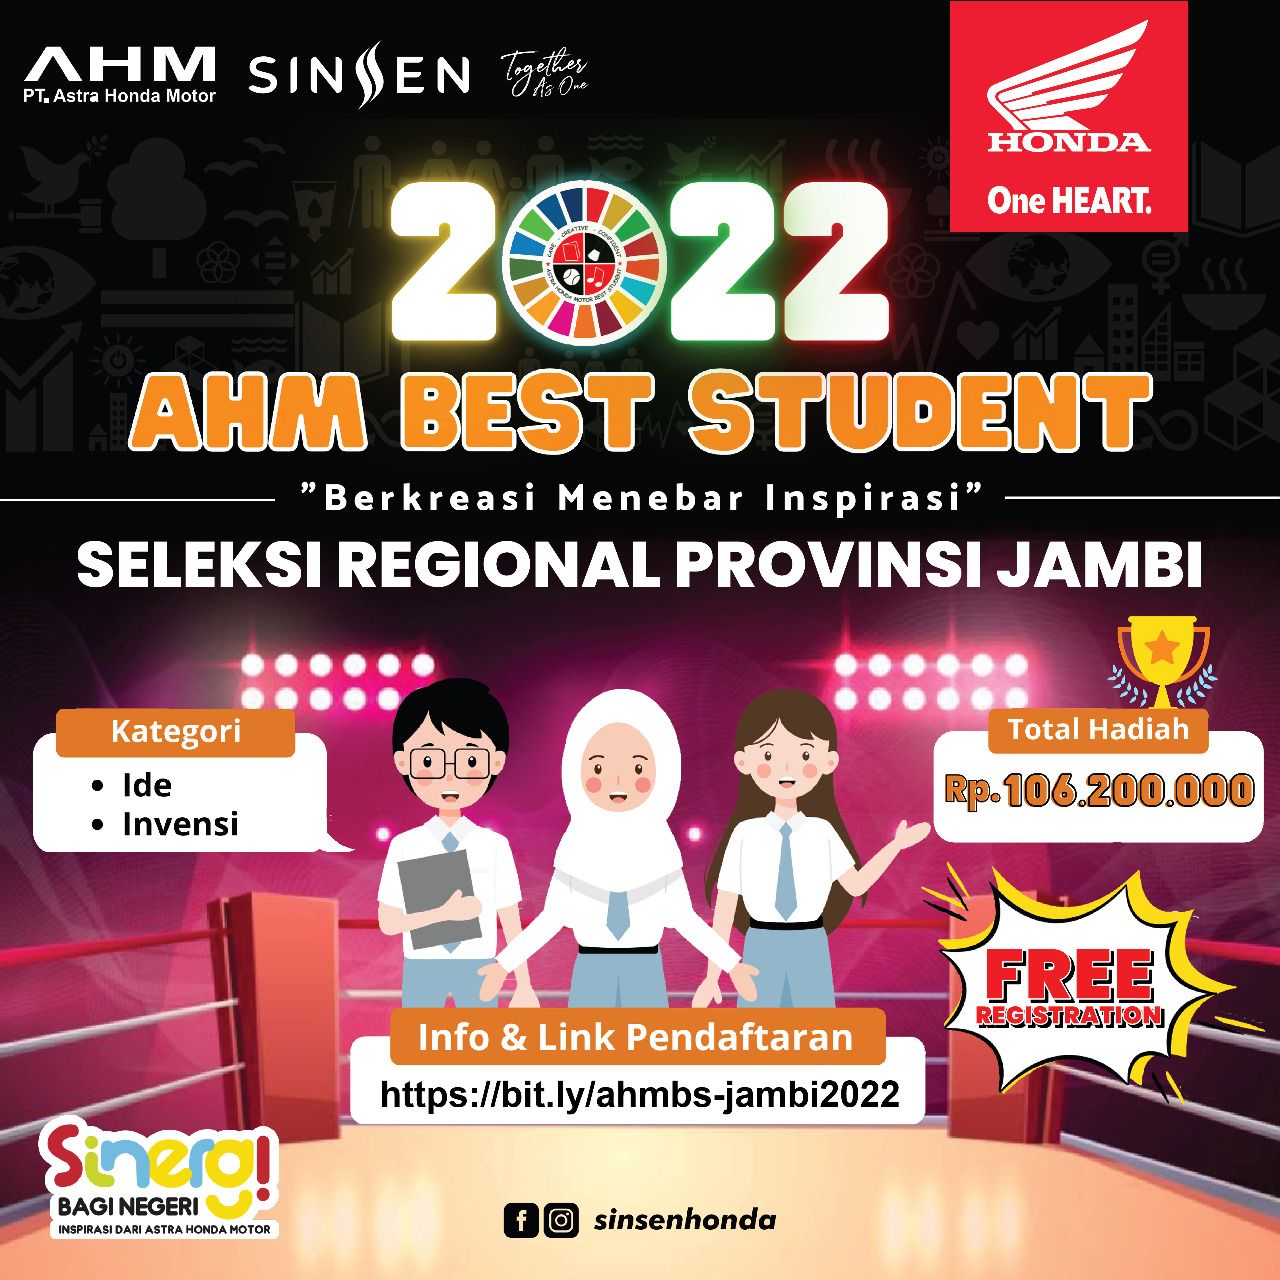 Sinsen Gelar AHM Best Student Regional Jambi 2022, Tersedia Beasiswa Total Ratusan Juta Rupiah 